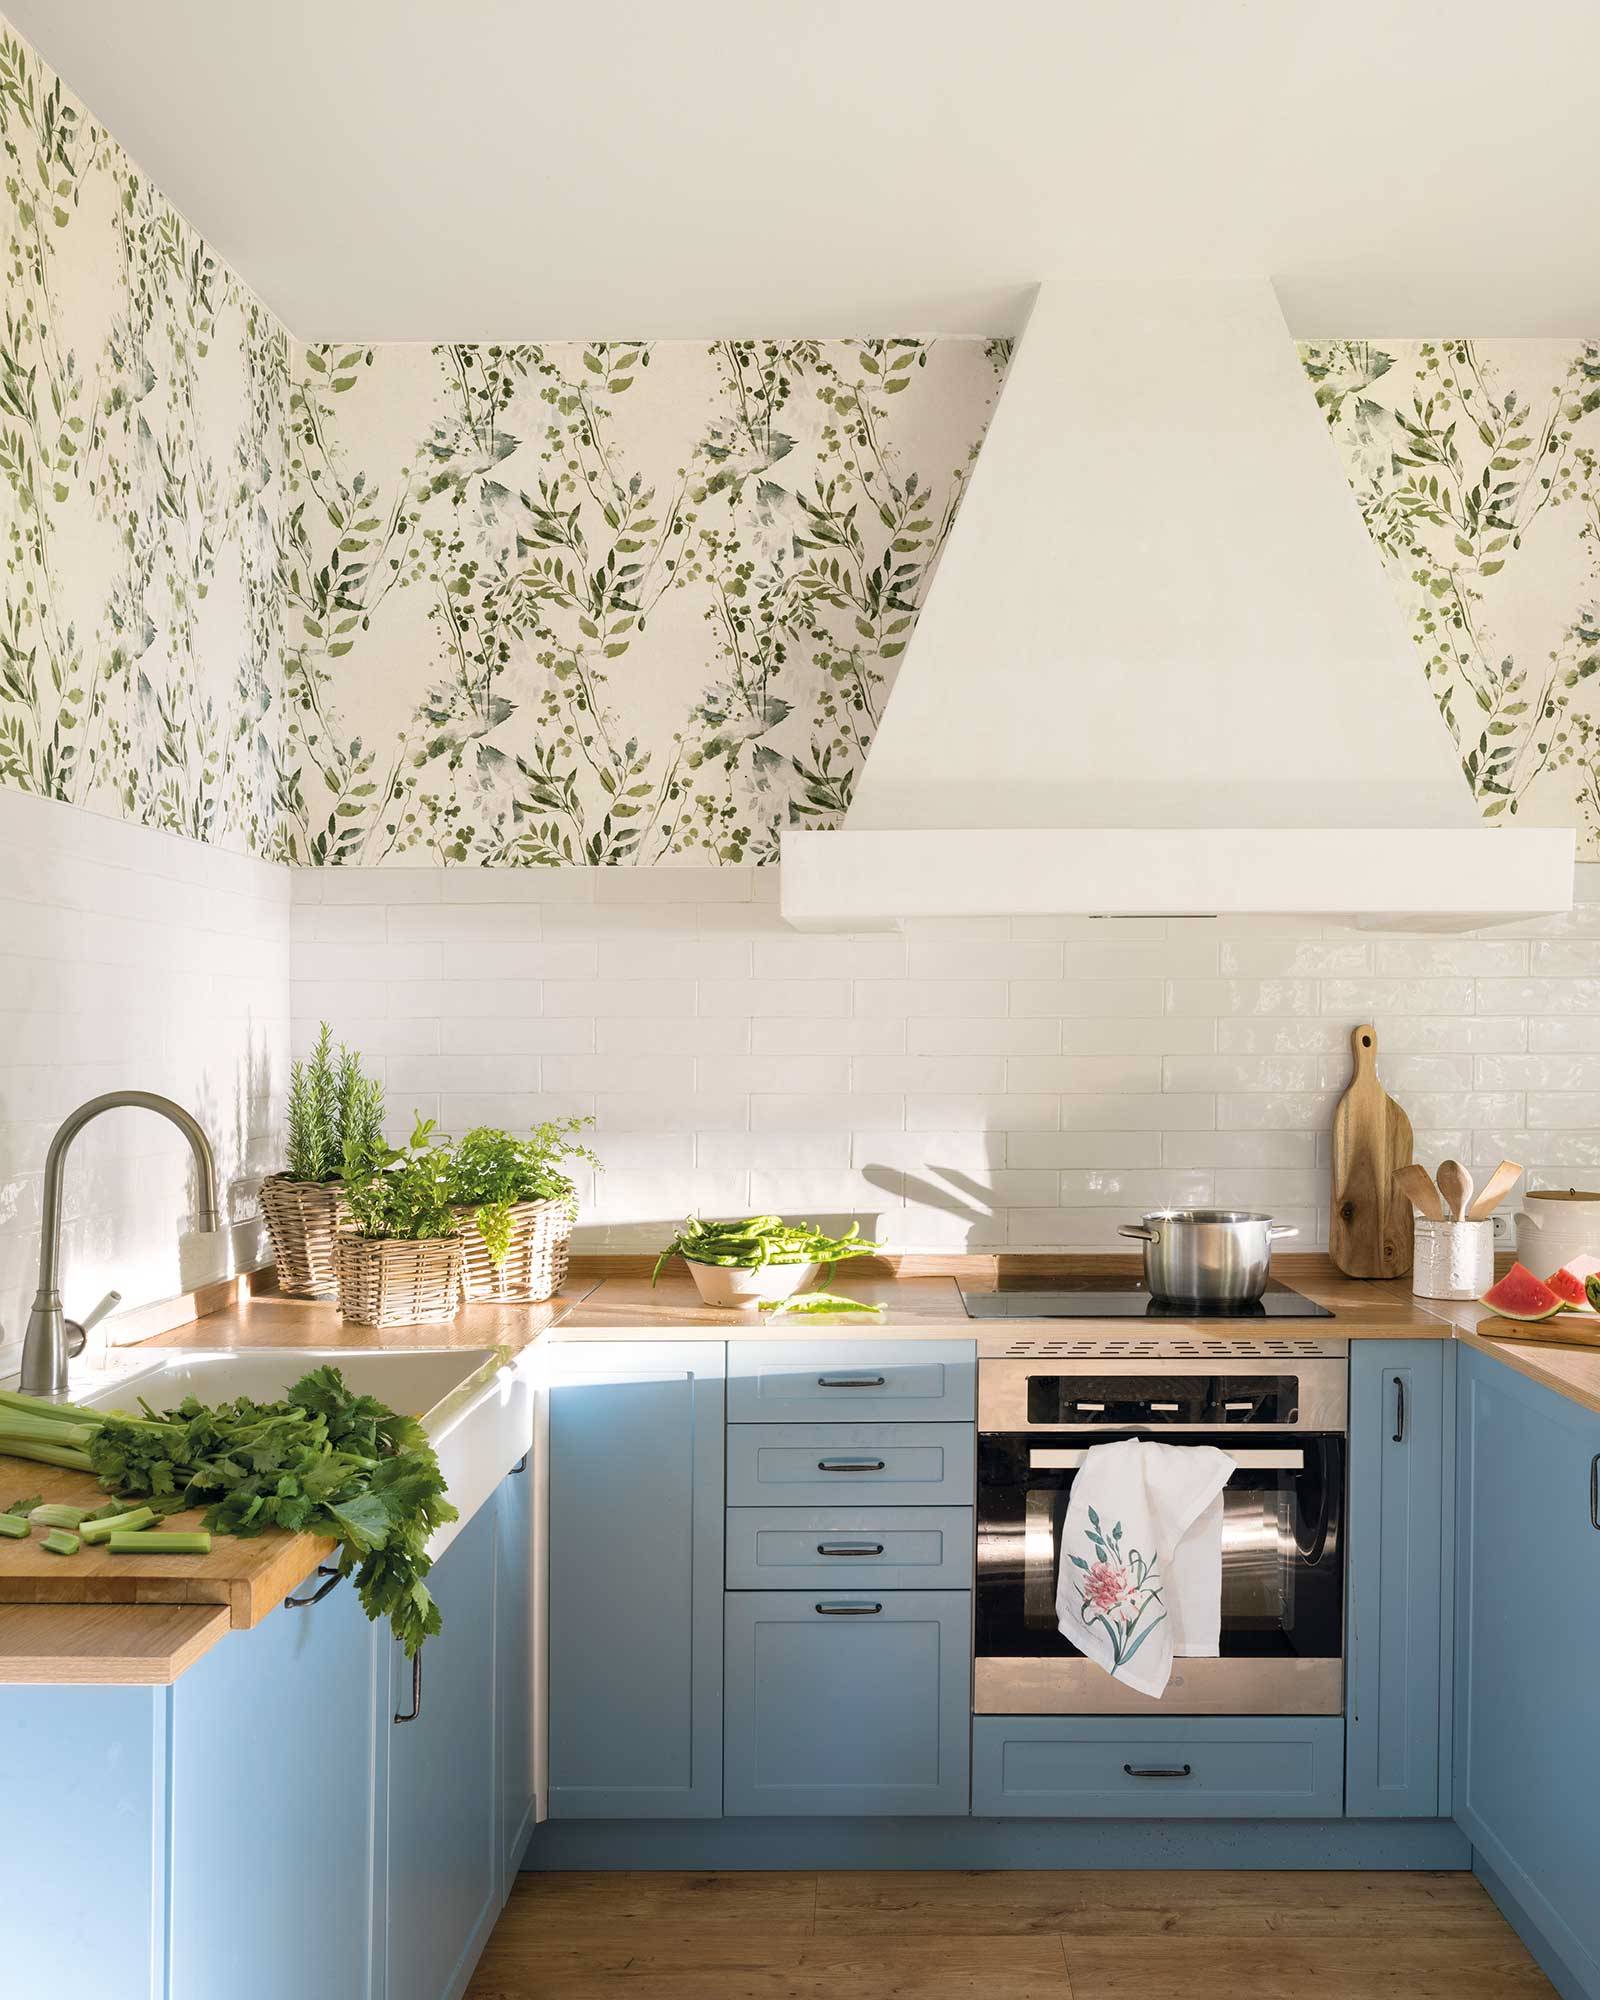 Cocina con campana decorativa, antepecho de azulejos y paredes de papel pintado. 